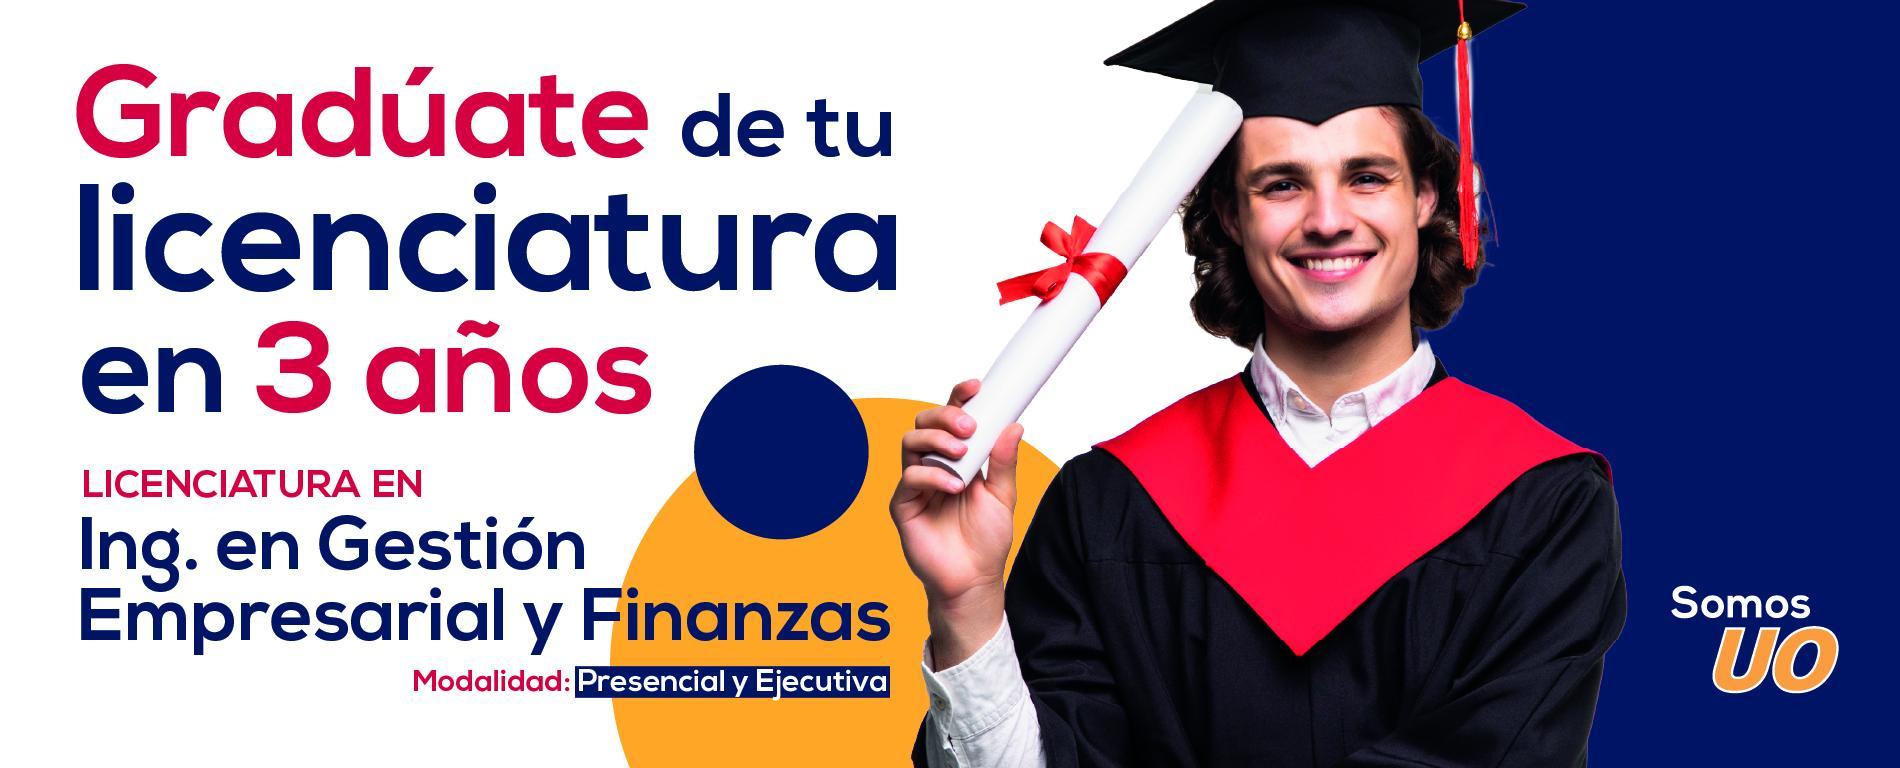 Licenciatura en Gestión Empresarial y Finanzas Universidad de Oriente Veracruz